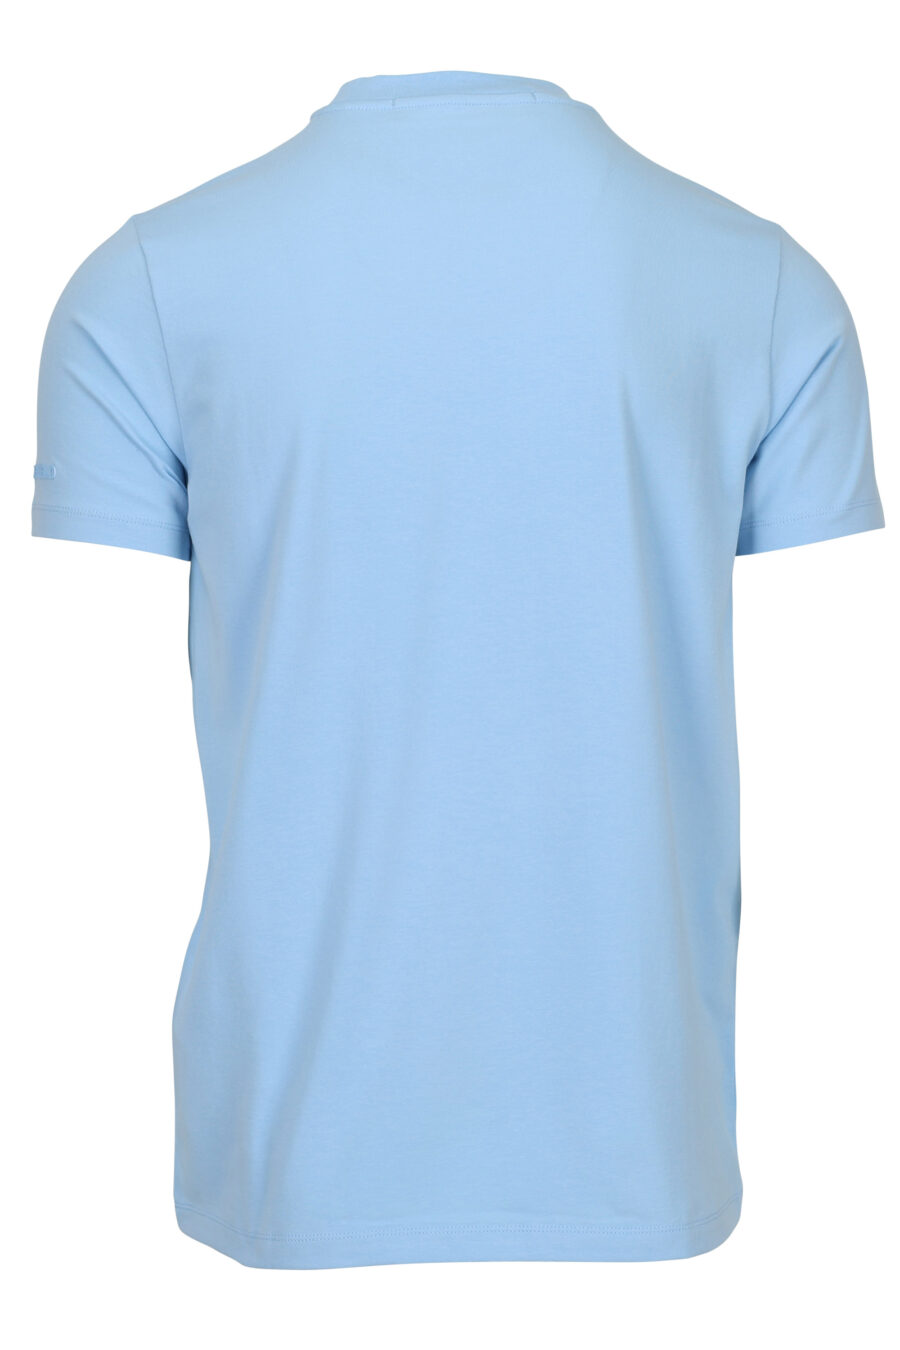 Camiseta azul claro con maxilogo "karl" monocromático - 4062226788632 1